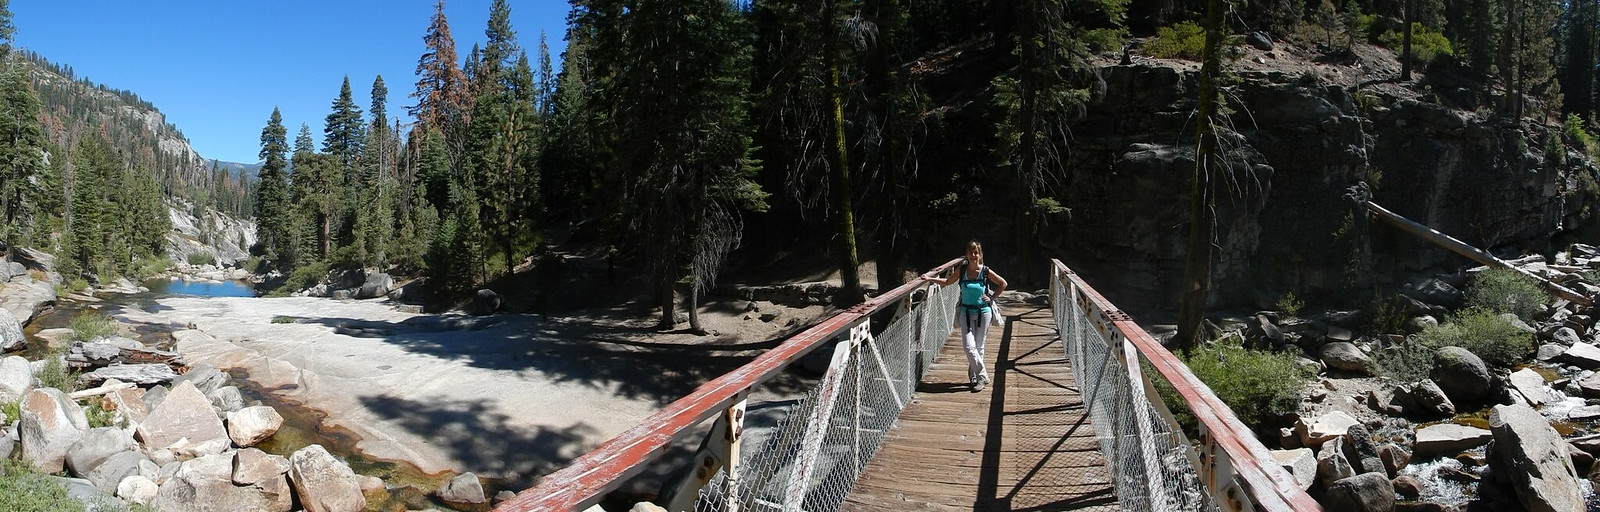 Yosemite National Park: Panorama Trail - Costa oeste de Estados Unidos: 25 días en ruta por el far west (15)